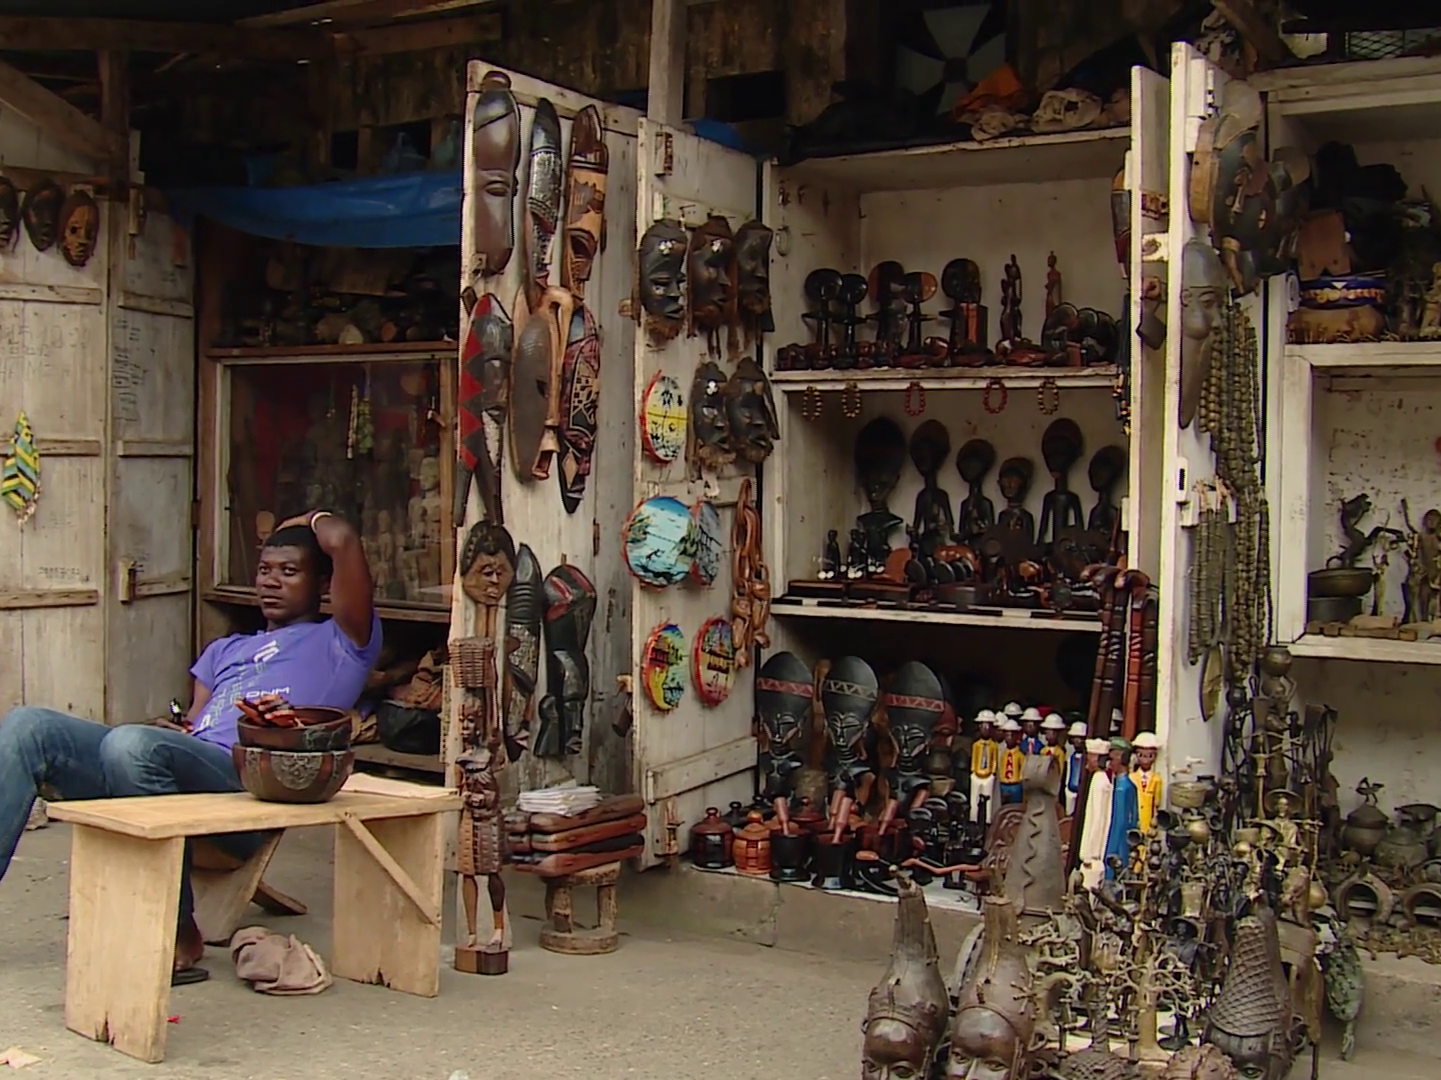 Ein Straßenstand in Afrika mit ethnischen Kunstwerken